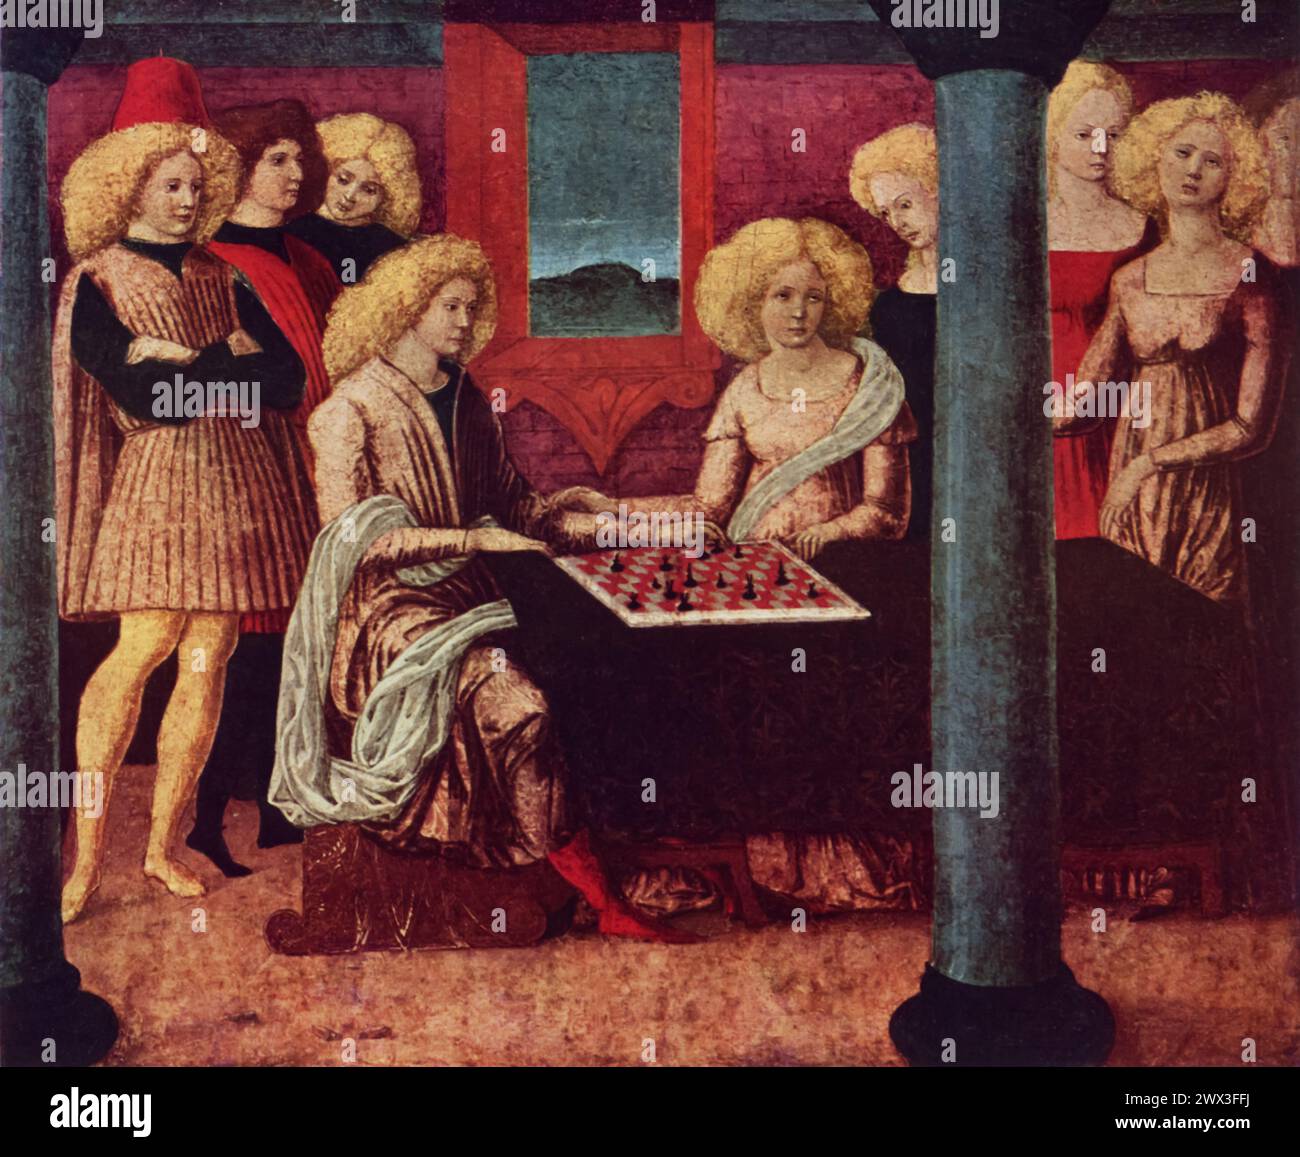 Liberale da Verona's Chess Players (vers 1475) : cette peinture, qui fait partie de la collection du Metropolitan Museum of Art de New York, capture un moment d'engagement intellectuel entre deux individus impliqués dans une partie d'échecs. L'œuvre est célébrée pour sa représentation vivante des tenues de la Renaissance et le cadre intérieur richement décoré. Banque D'Images